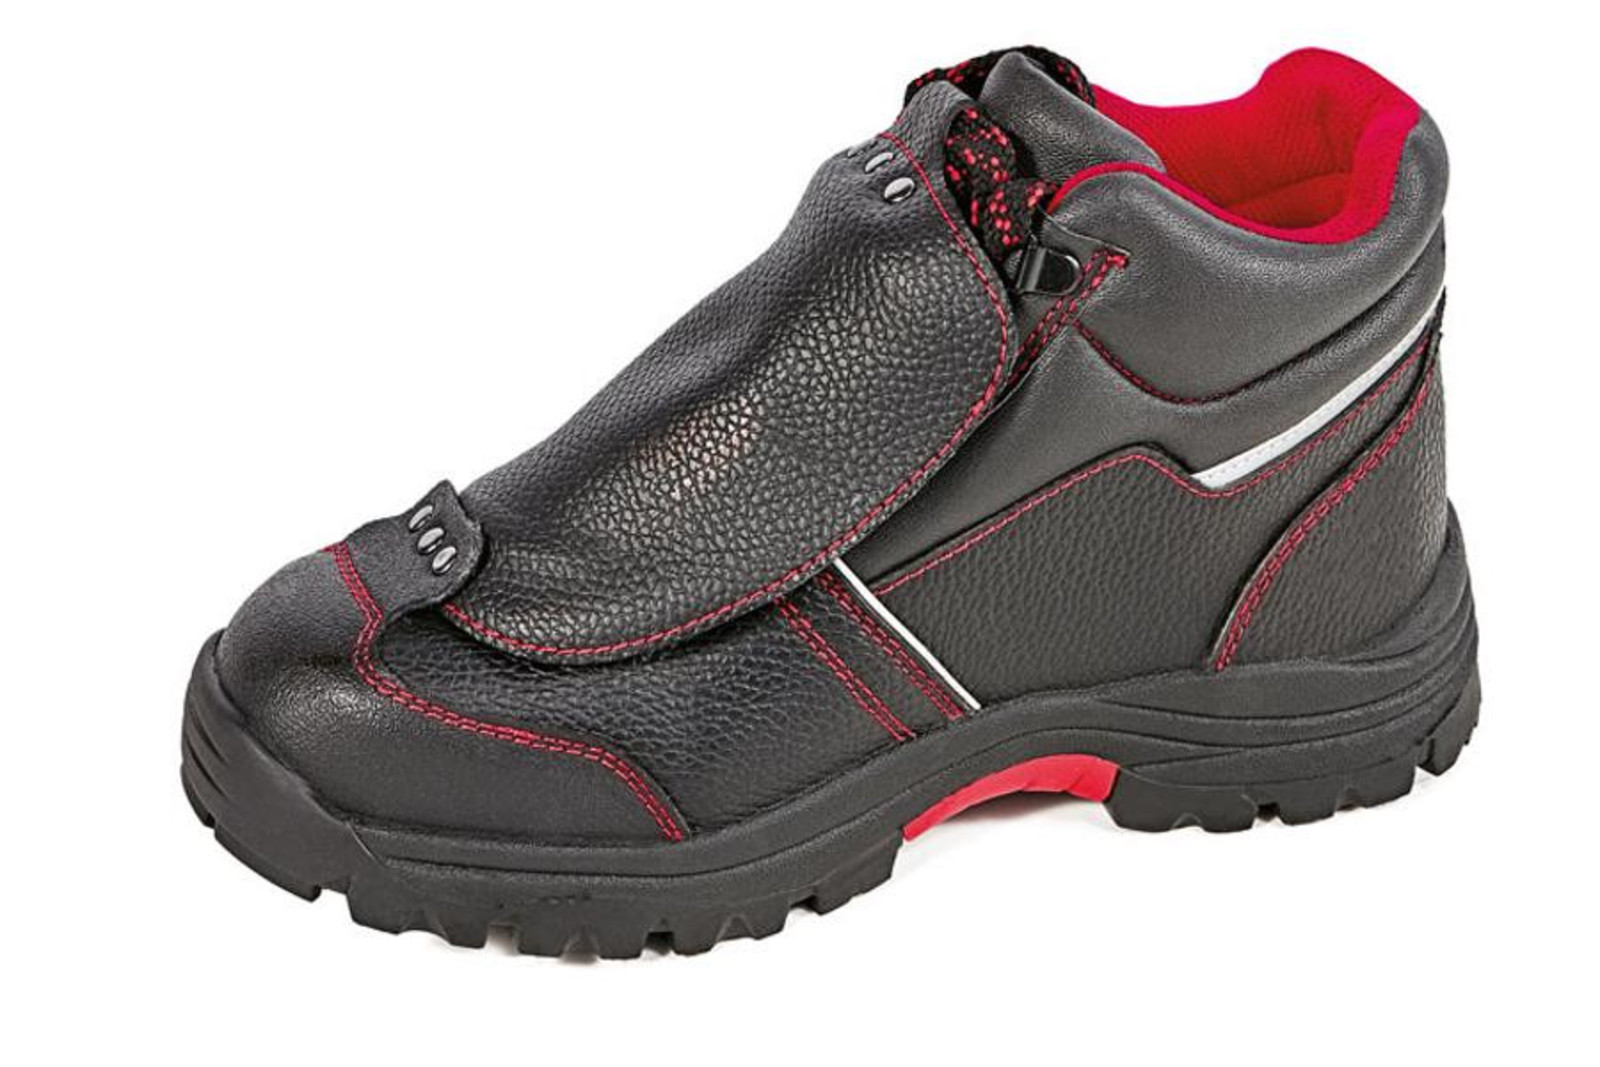 Bezpečnostná členková obuv Cerva Steeler Metatarsal S3 HRO M SRA  - veľkosť: 36, farba: čierna